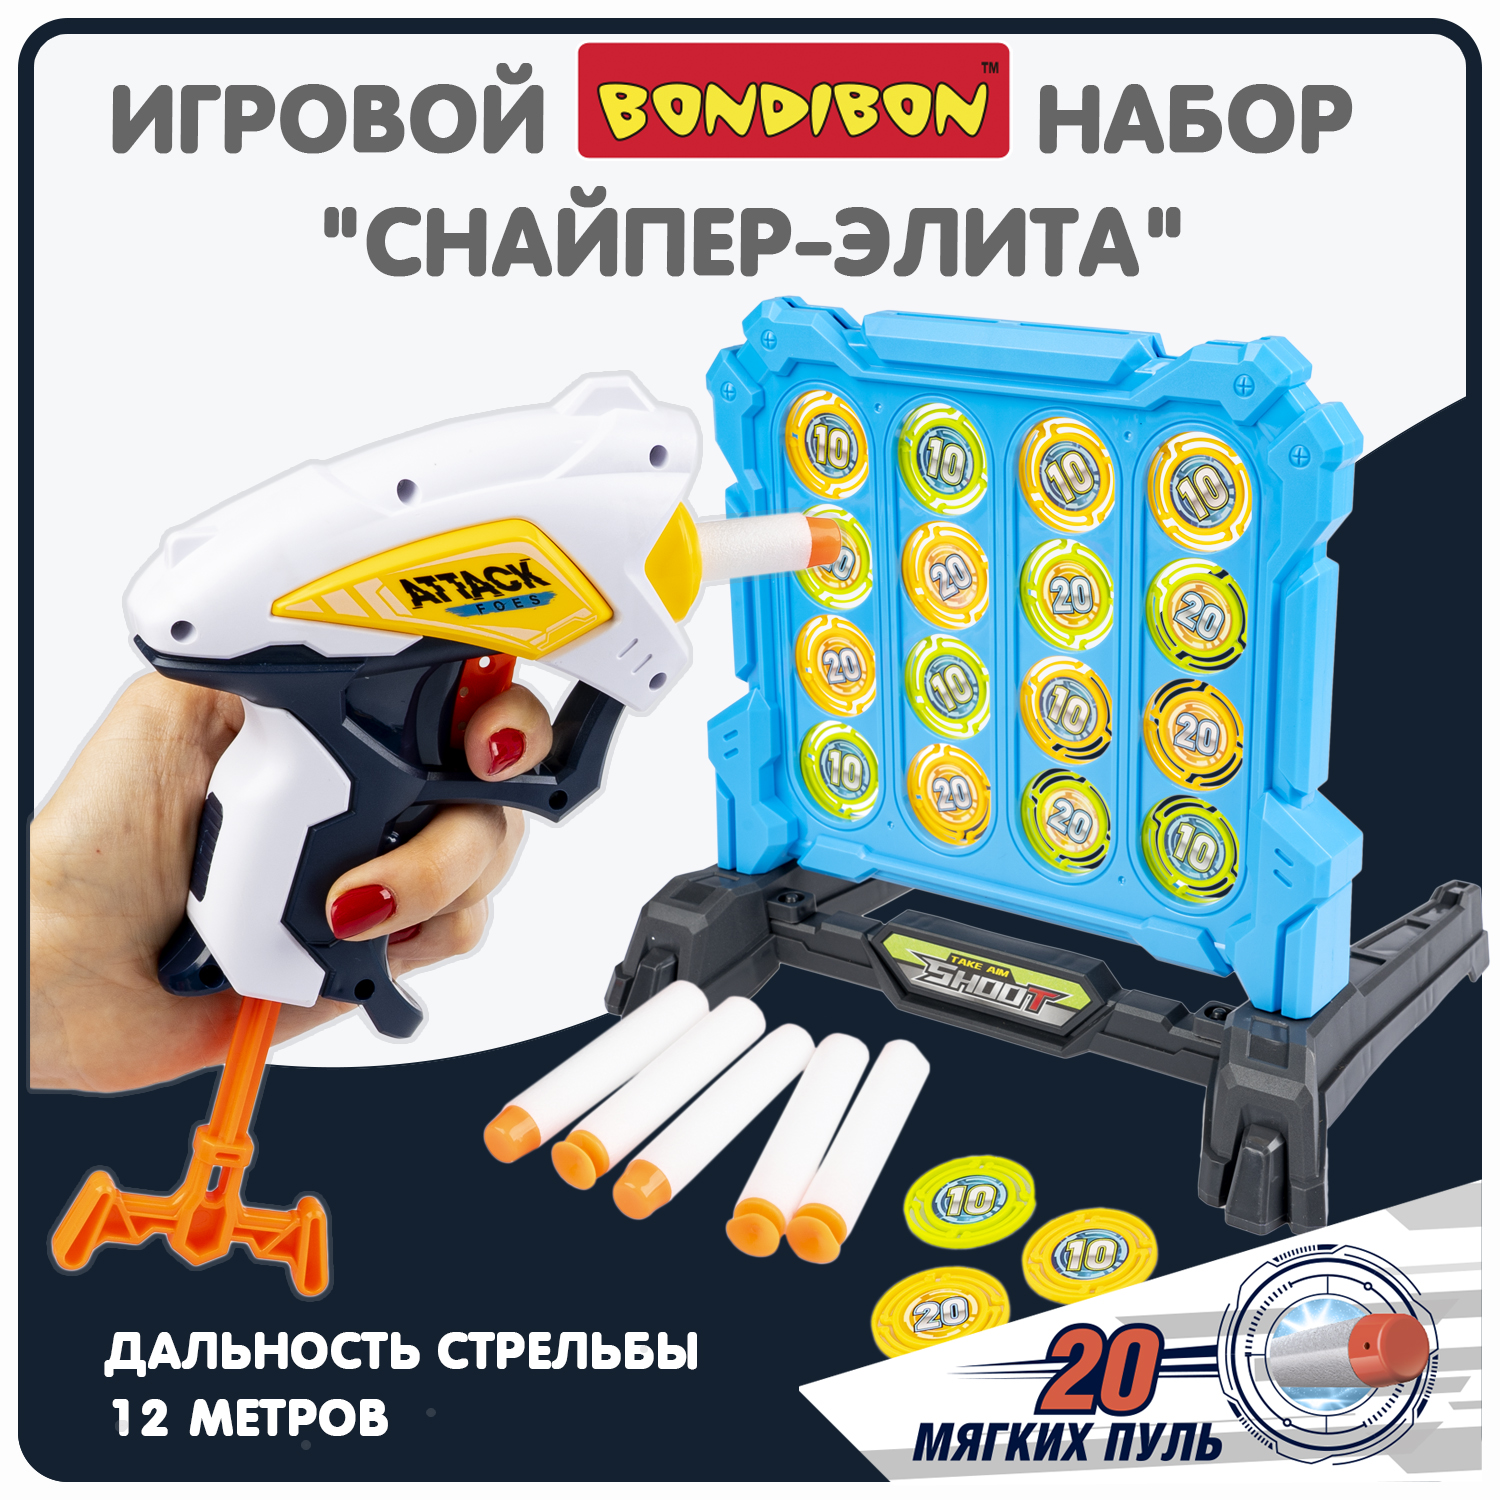 Набор игровой Bondibon CНАЙПЕР-элита пистолет, мишень, мягкие пули / ВВ6064(игрушка) строптивая мишень